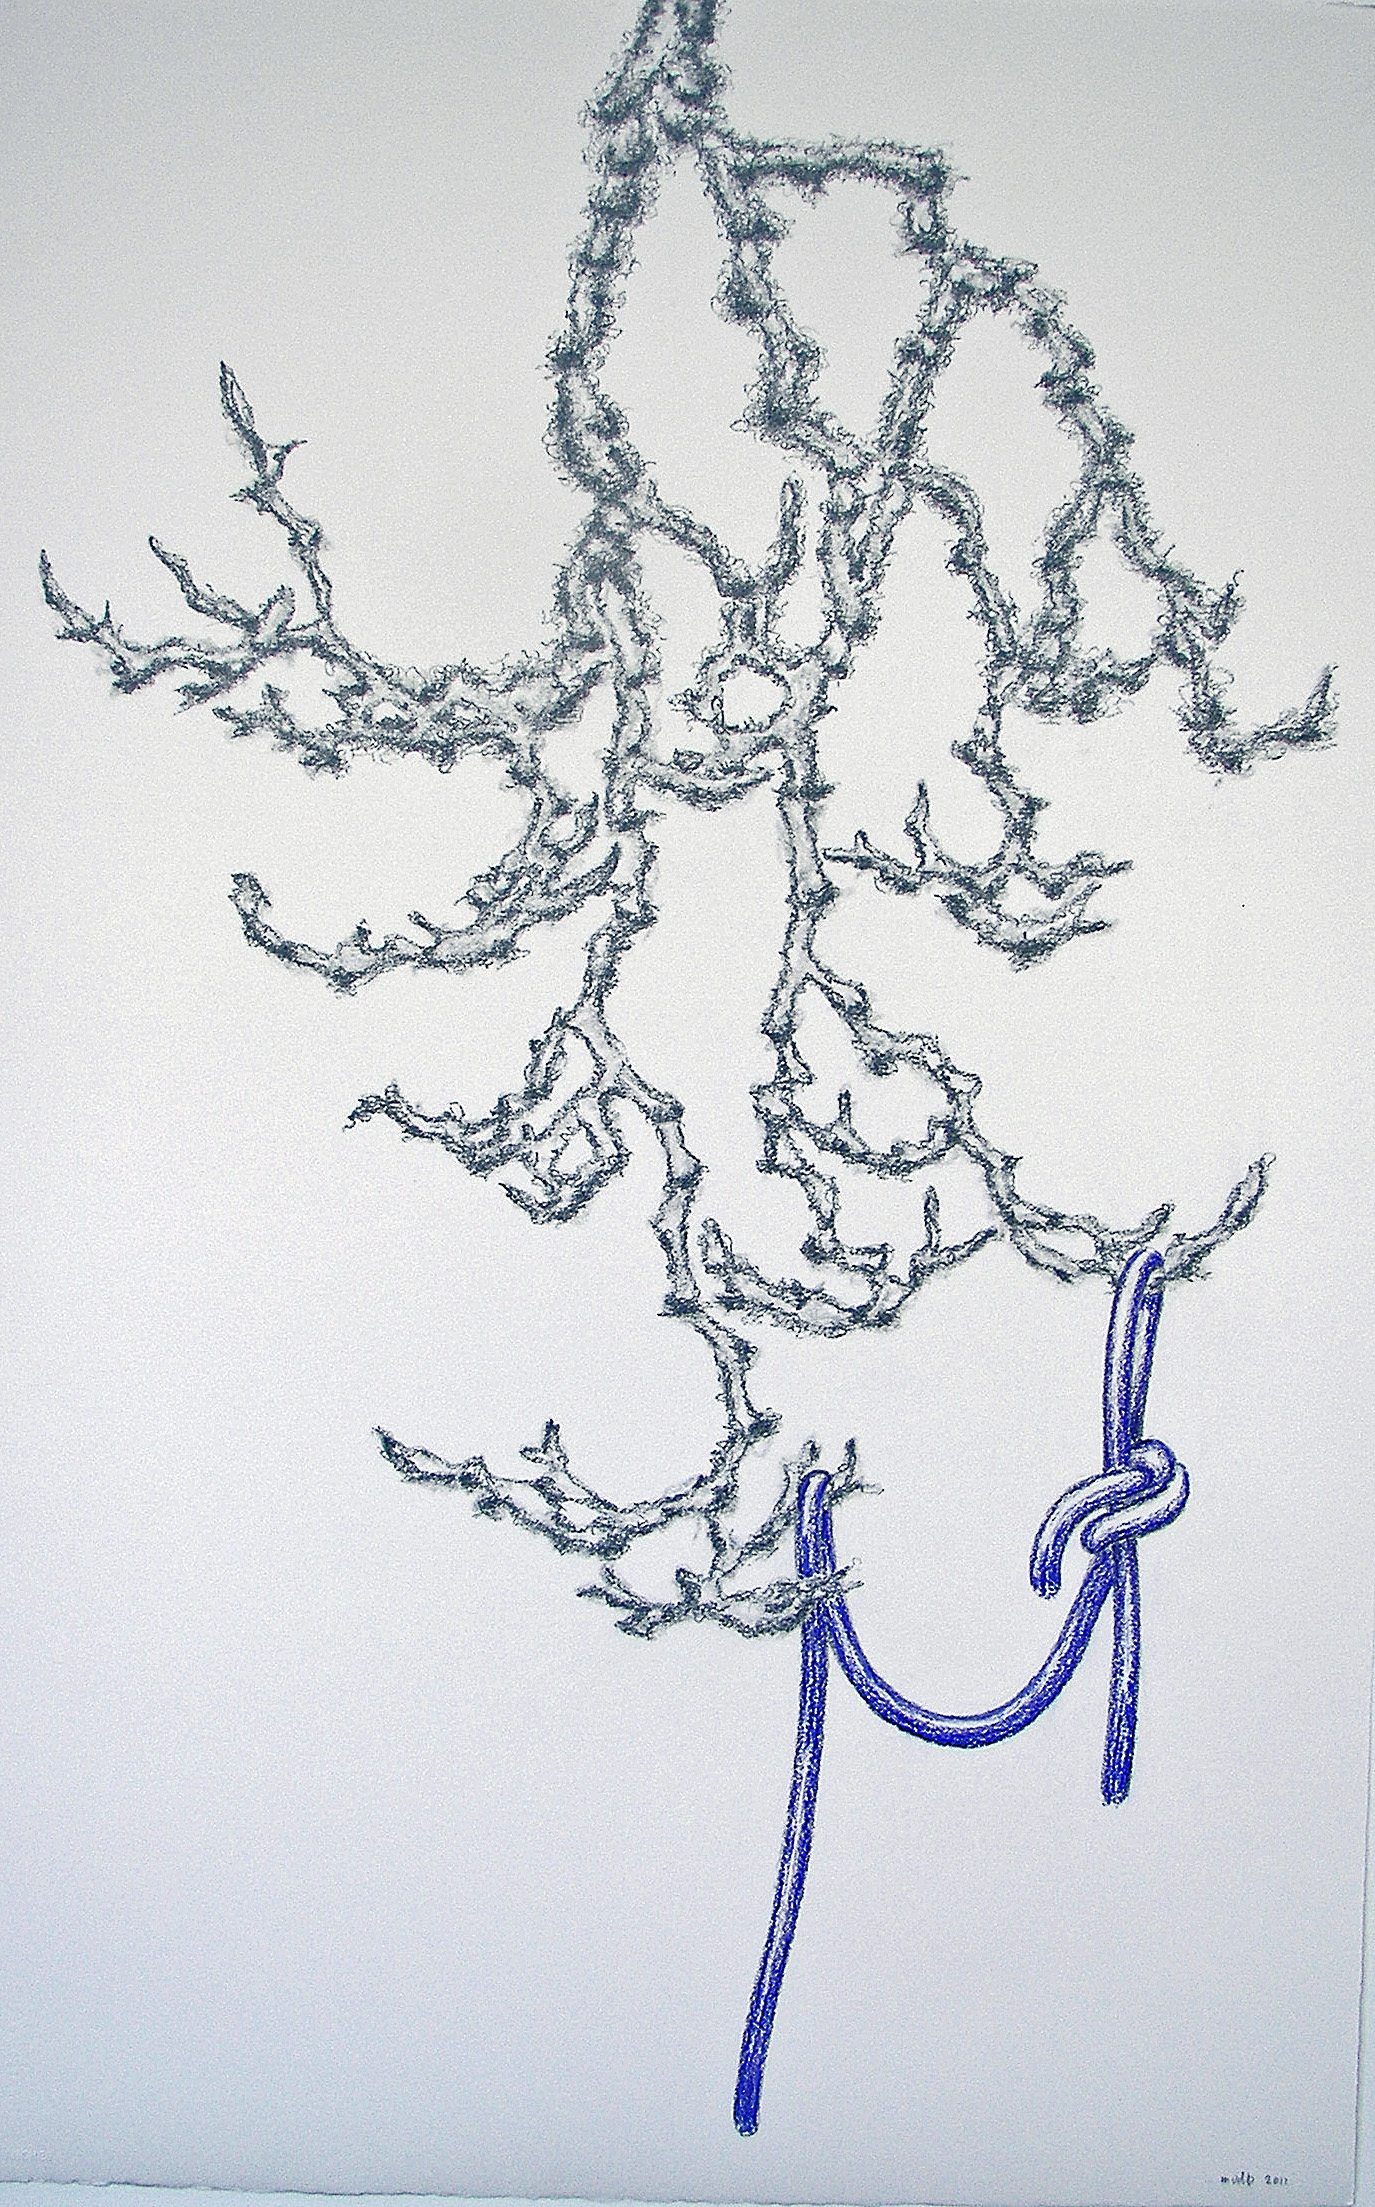 2011-zonder titel, grafiet, conte op papier, 108x71cm